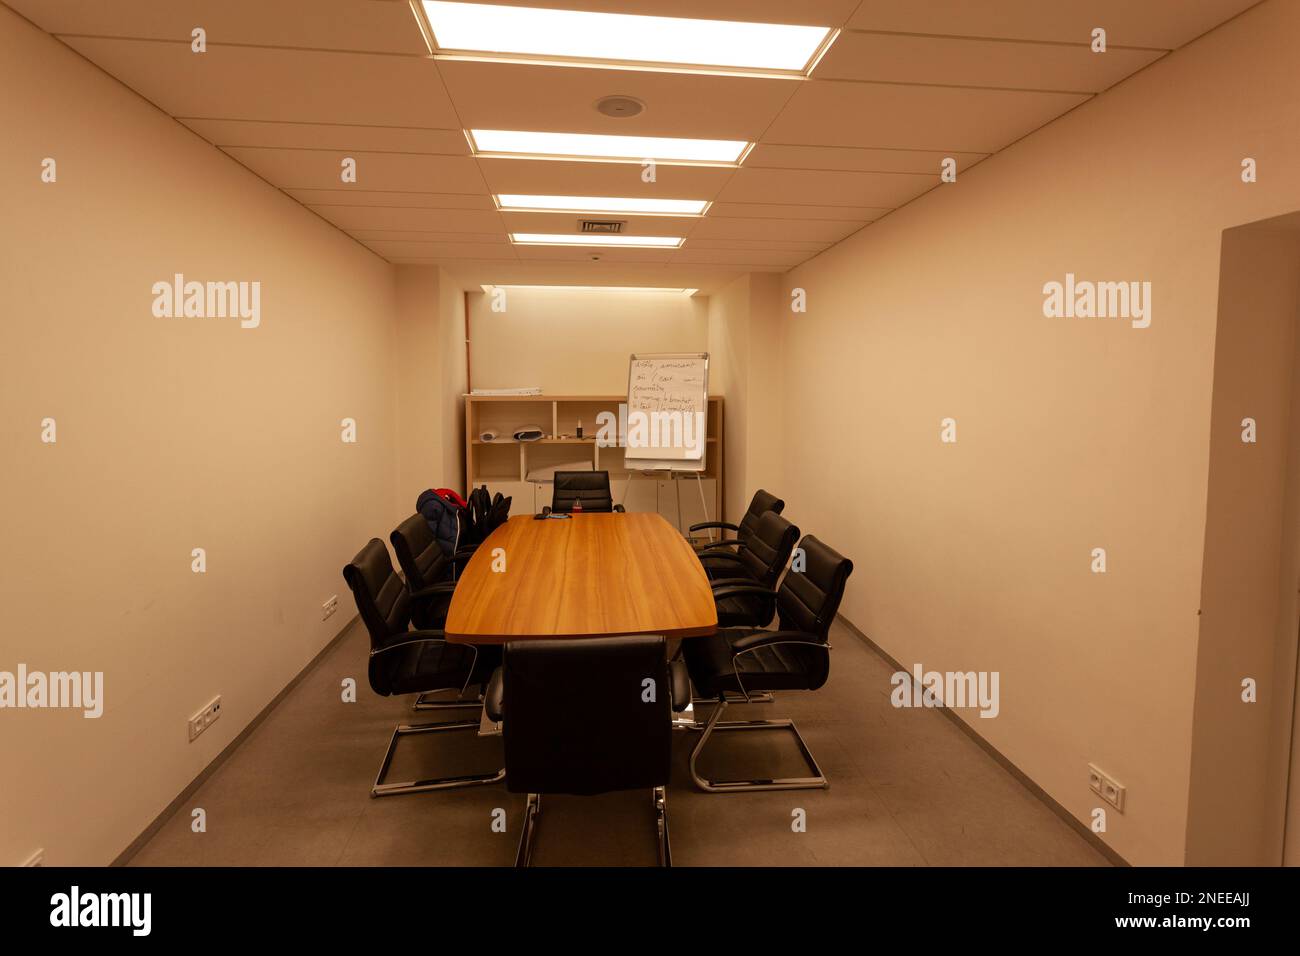 Les chaises noires sont autour d'une table de conférence éclairée par des lumières carrées au plafond. Banque D'Images